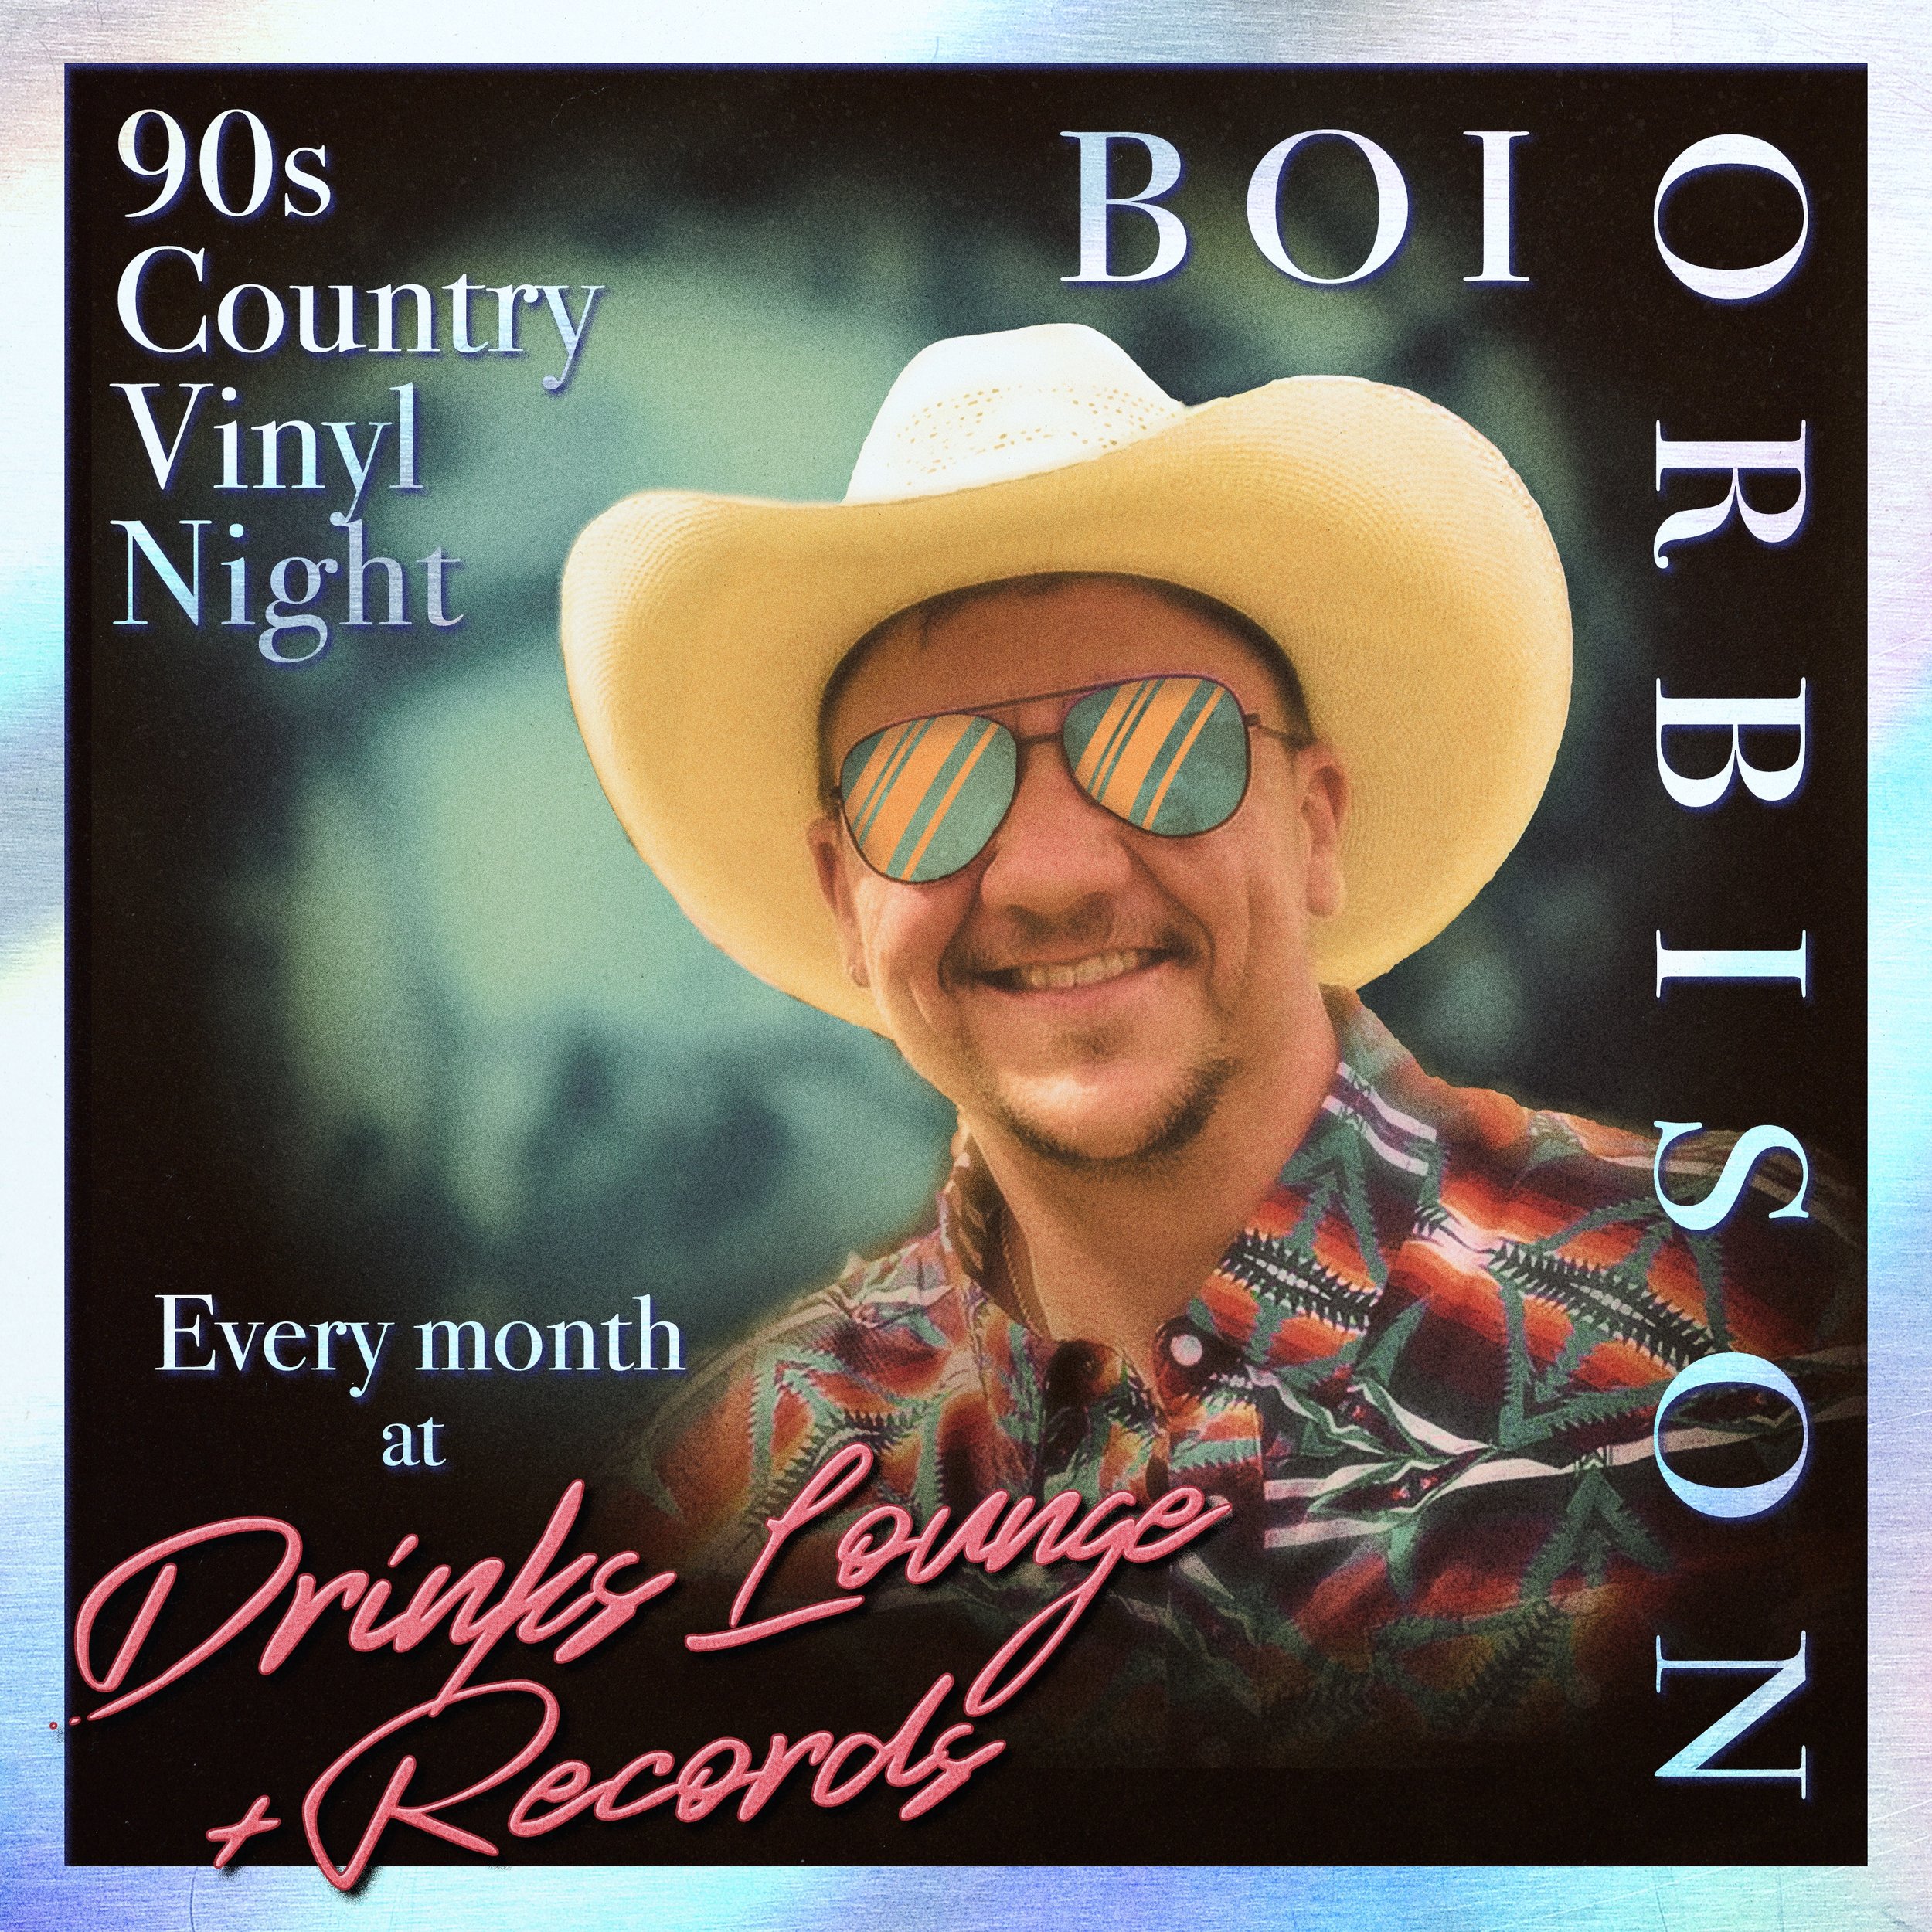 Boi Orbison - 90s Country Vinyl Night #4